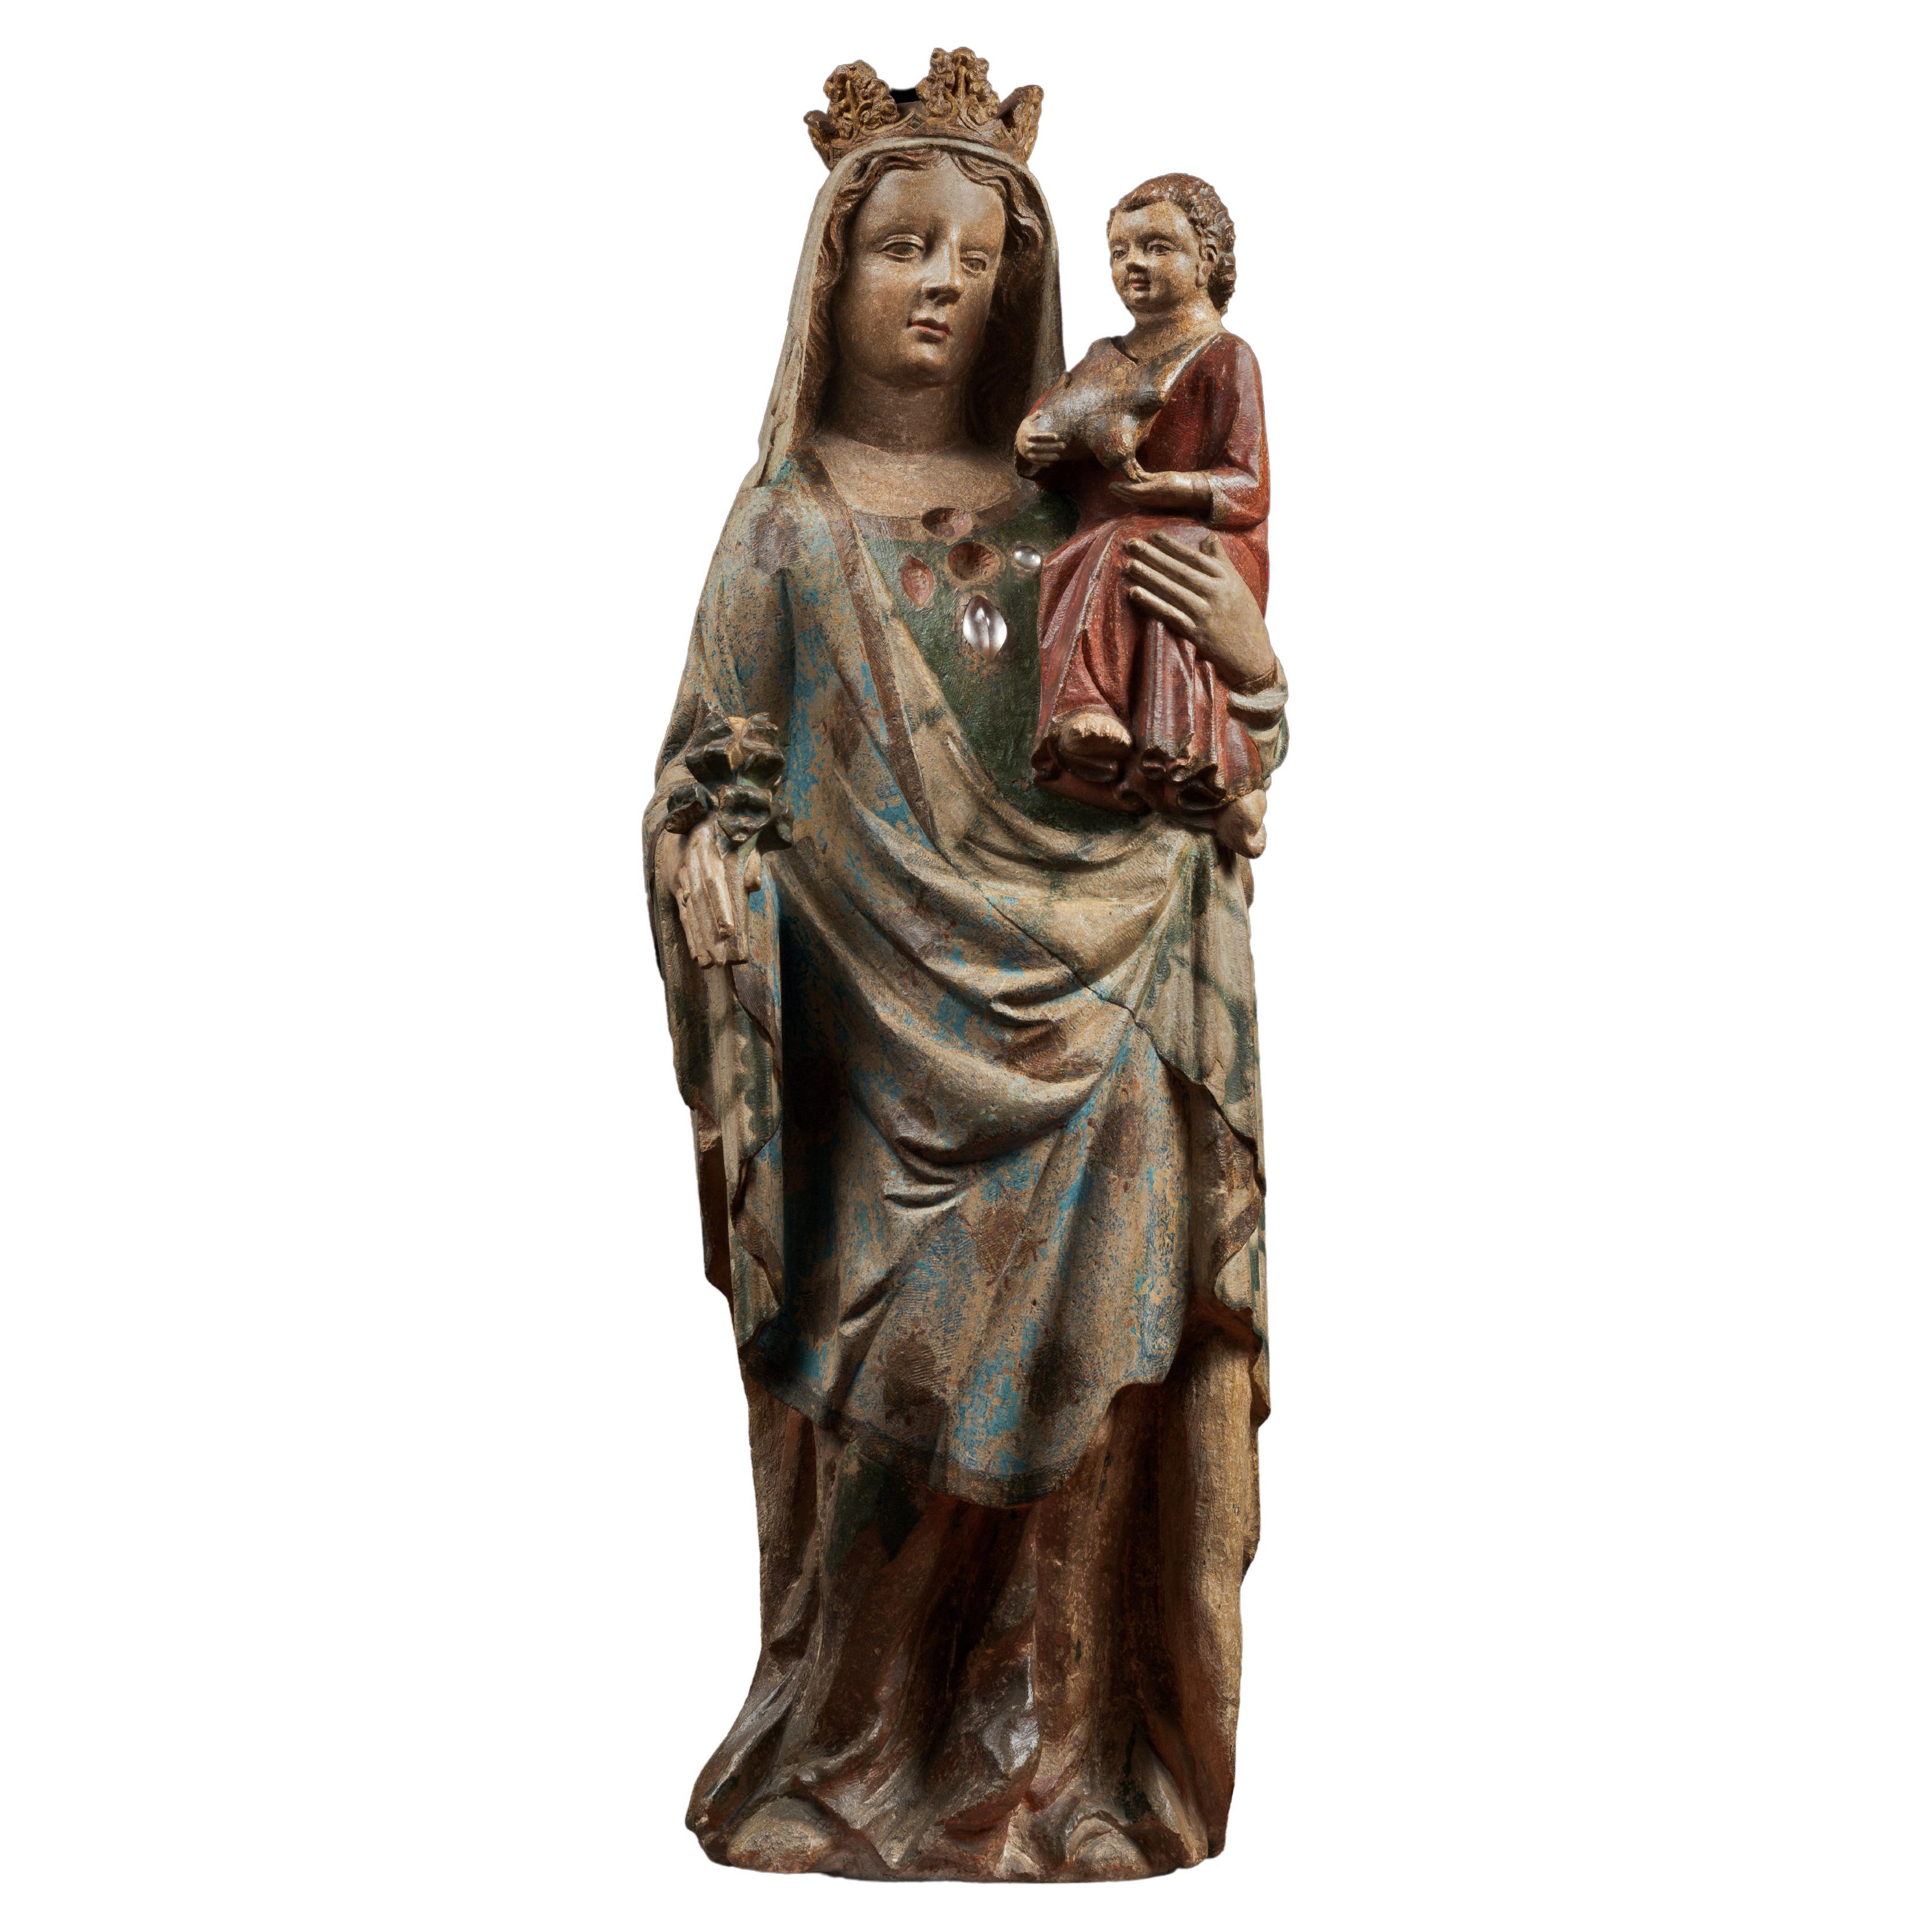 Importante Vierge de Lorraine du 14ème siècle en pierre calcaire polychrome